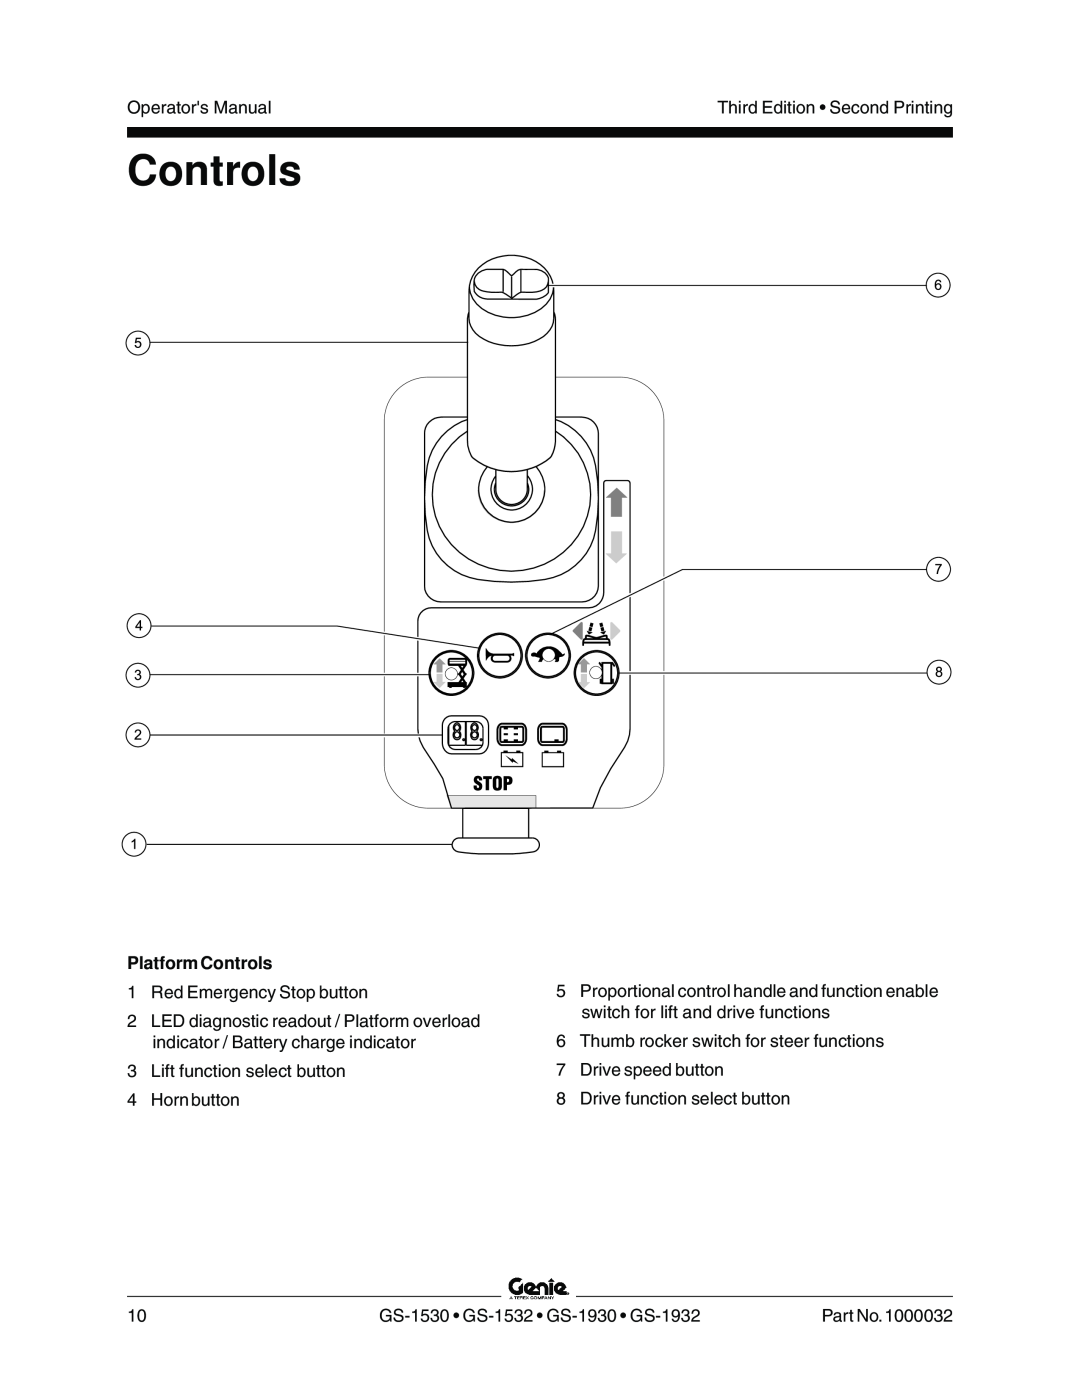 Genie GS-1530, GS-1930, CE, GS-1532, GS-1932 manual Platform Controls 